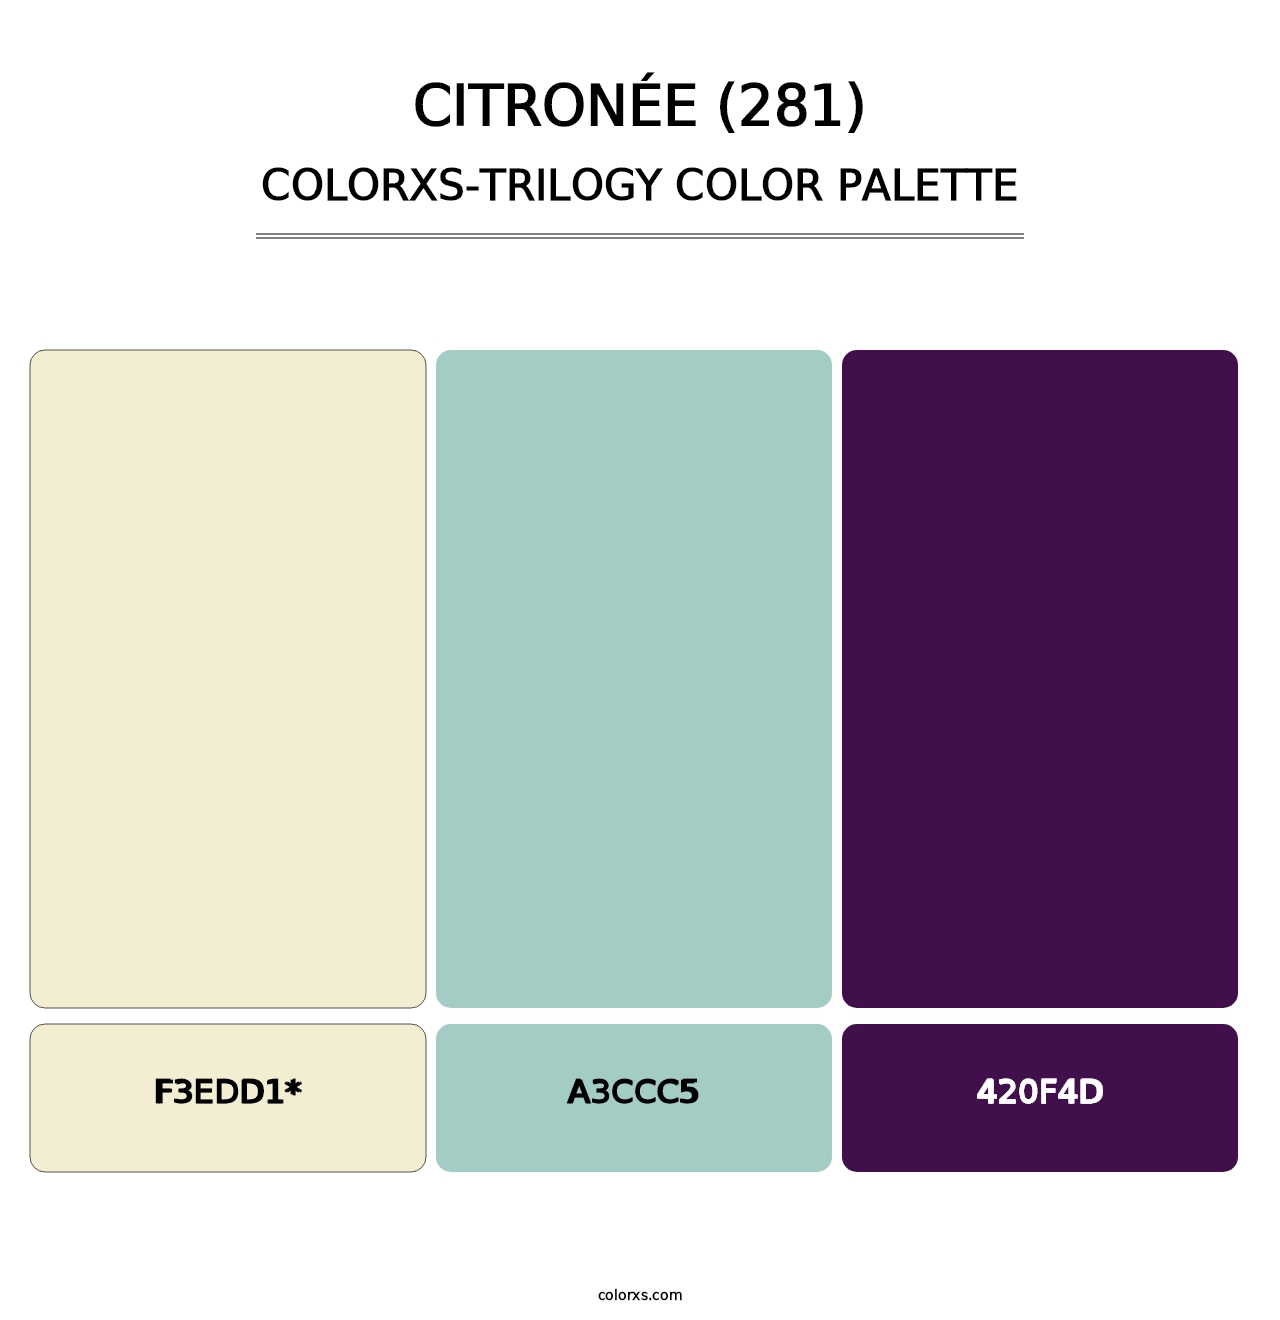 Citronée (281) - Colorxs Trilogy Palette